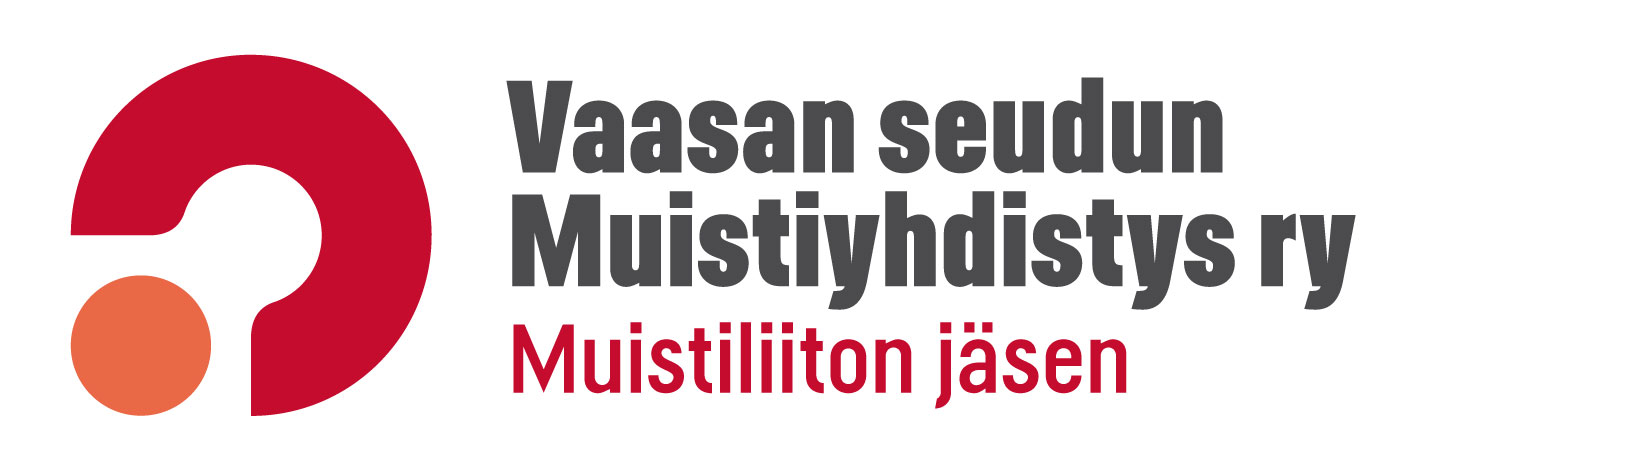 MUISTILIITTO Vaasan seudun Muistiyhdistys ry logo 2013 rgb vaaka2